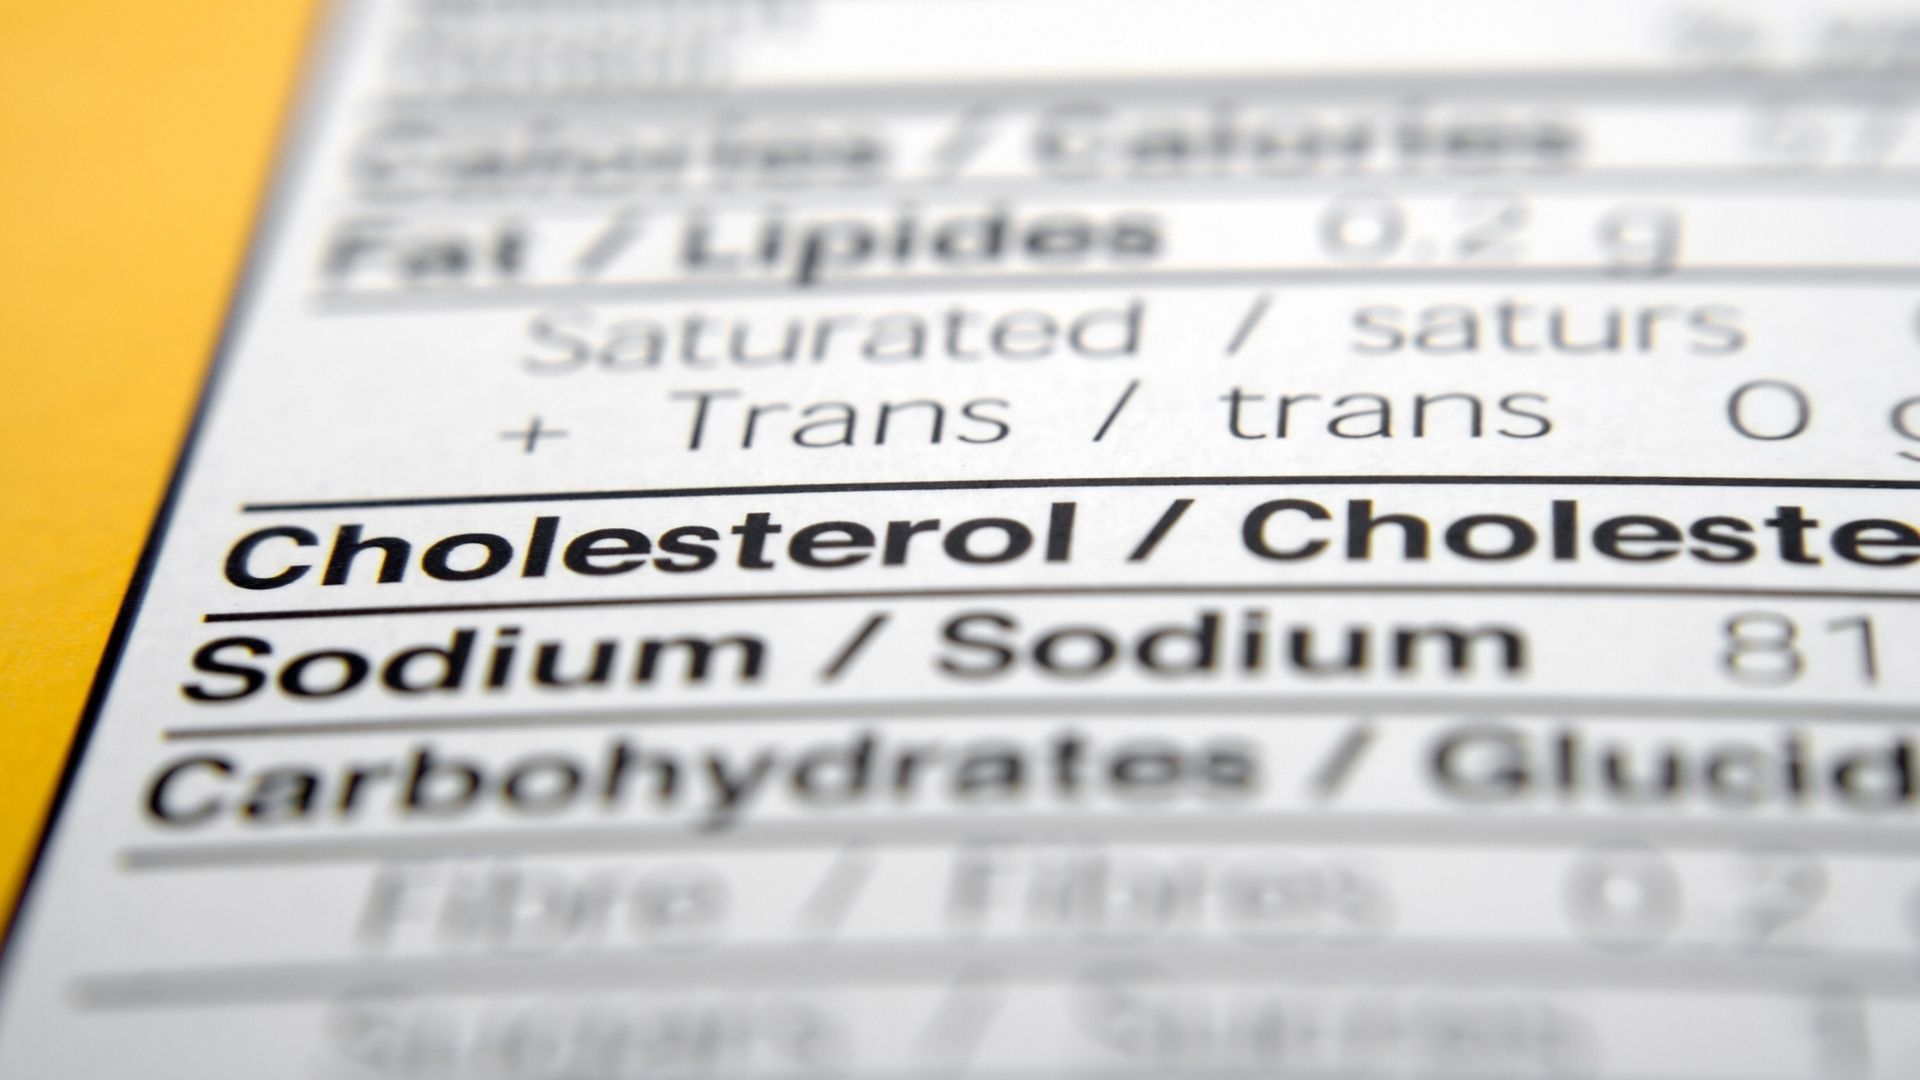 etichetta valori colesterolo per chi segue dieta